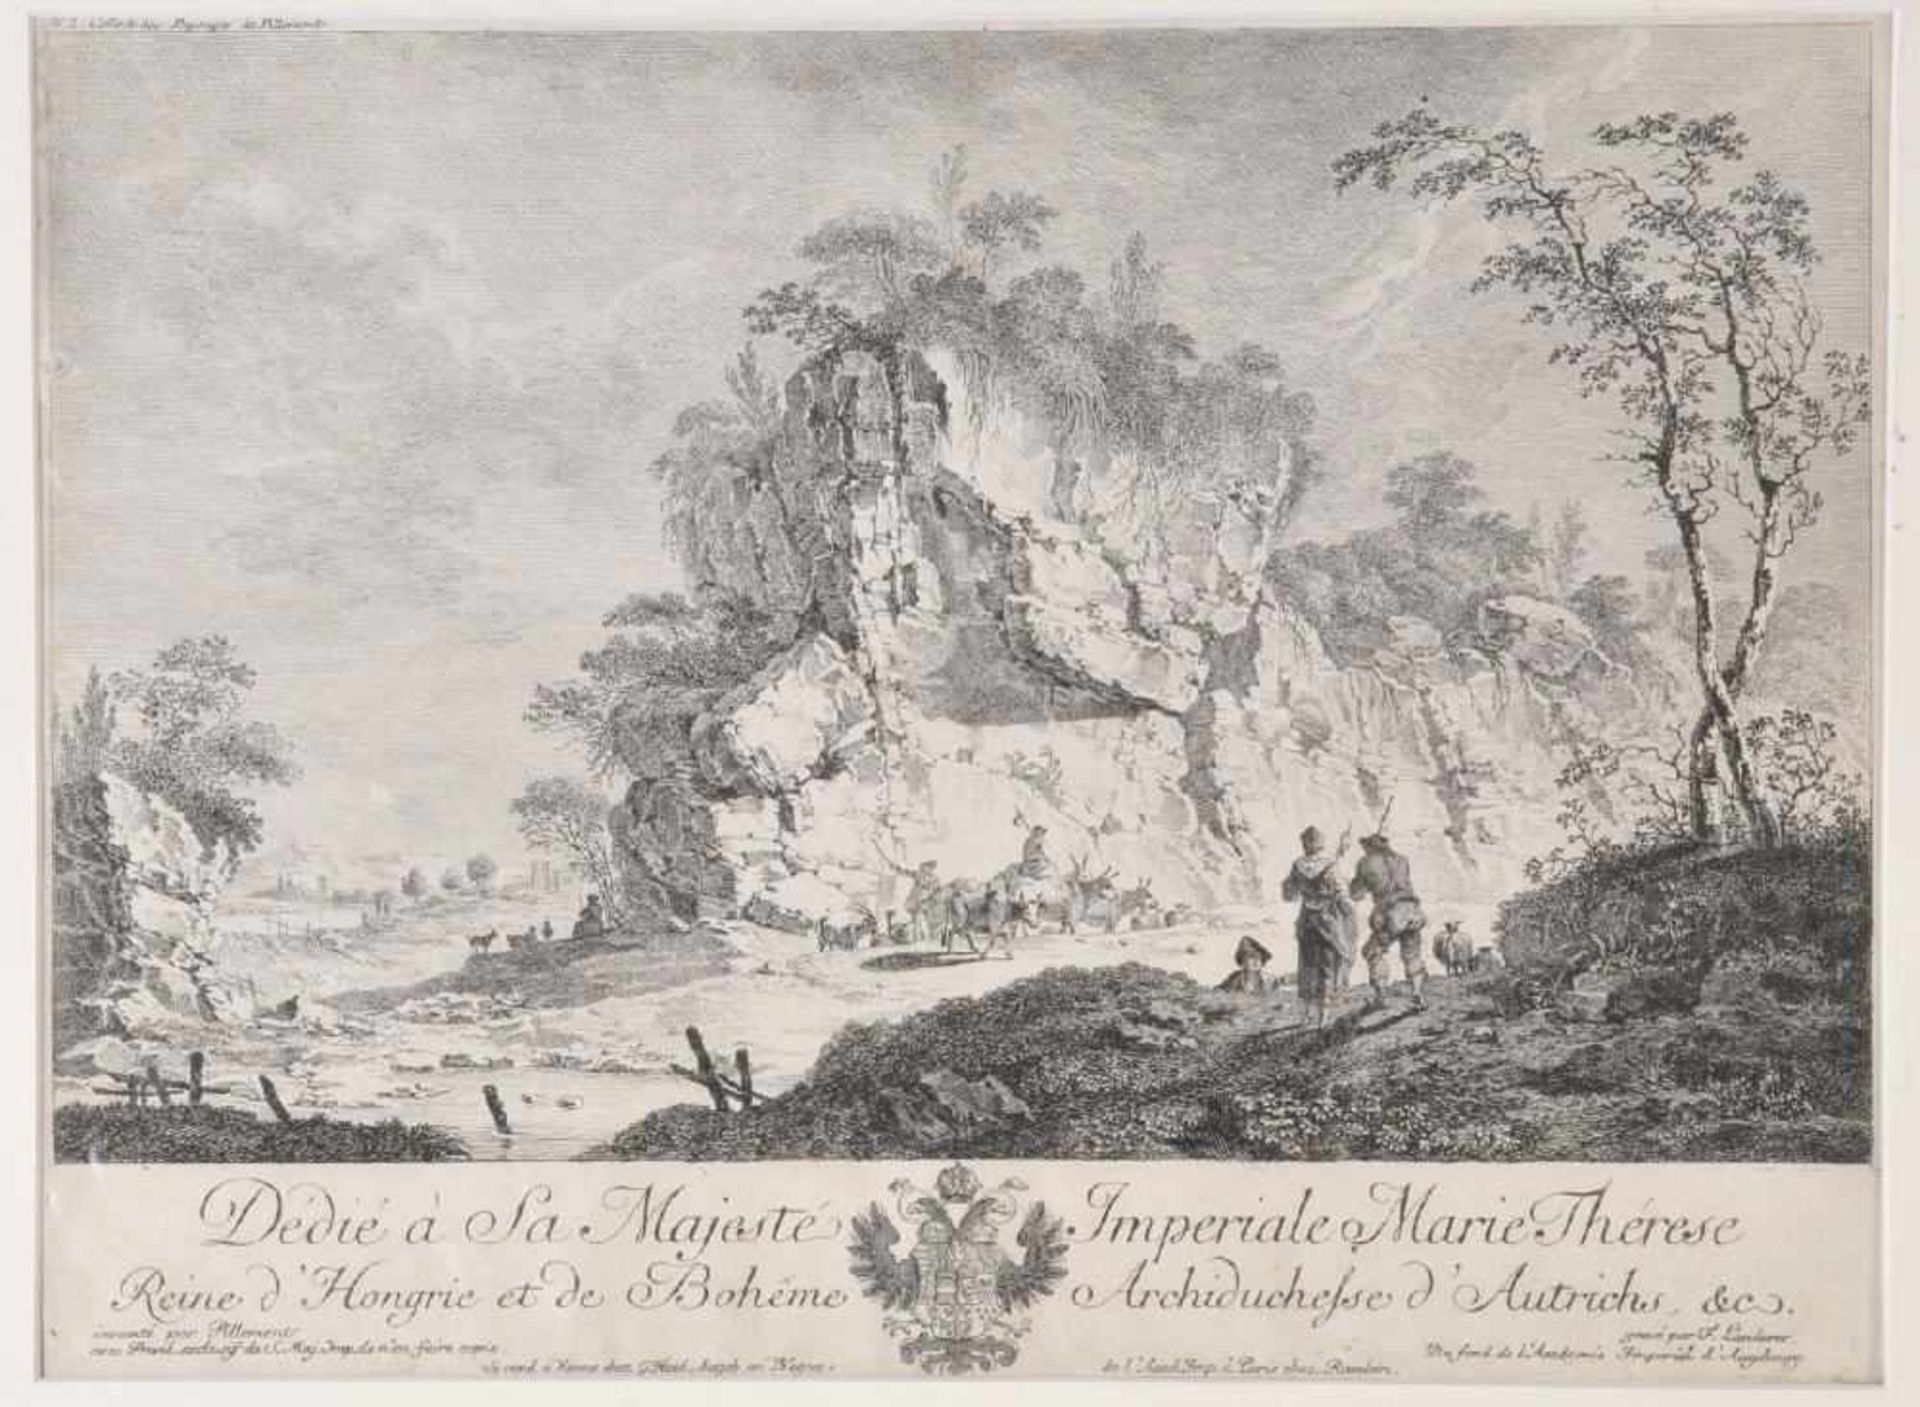 Landerer, Ferdinand, 1730 Stein unter der Enns - 1795 WienKupferstich, 23,5 x 37,5 cm, "